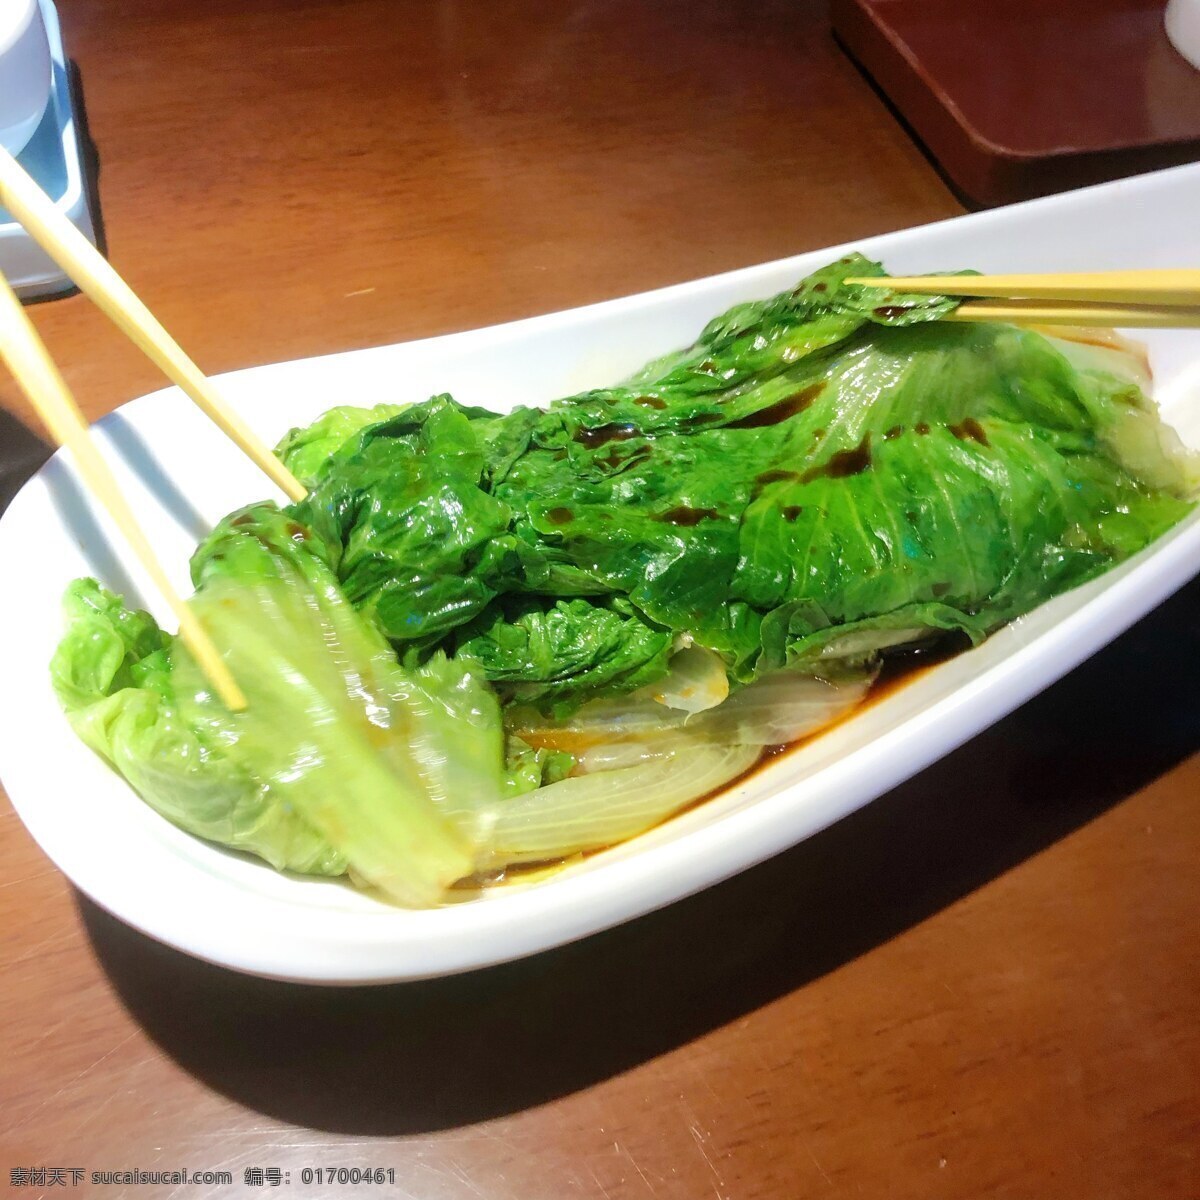 白灼生菜图片 生菜 白灼生菜 时蔬 绿色 粤式 摄影类 餐饮美食 传统美食